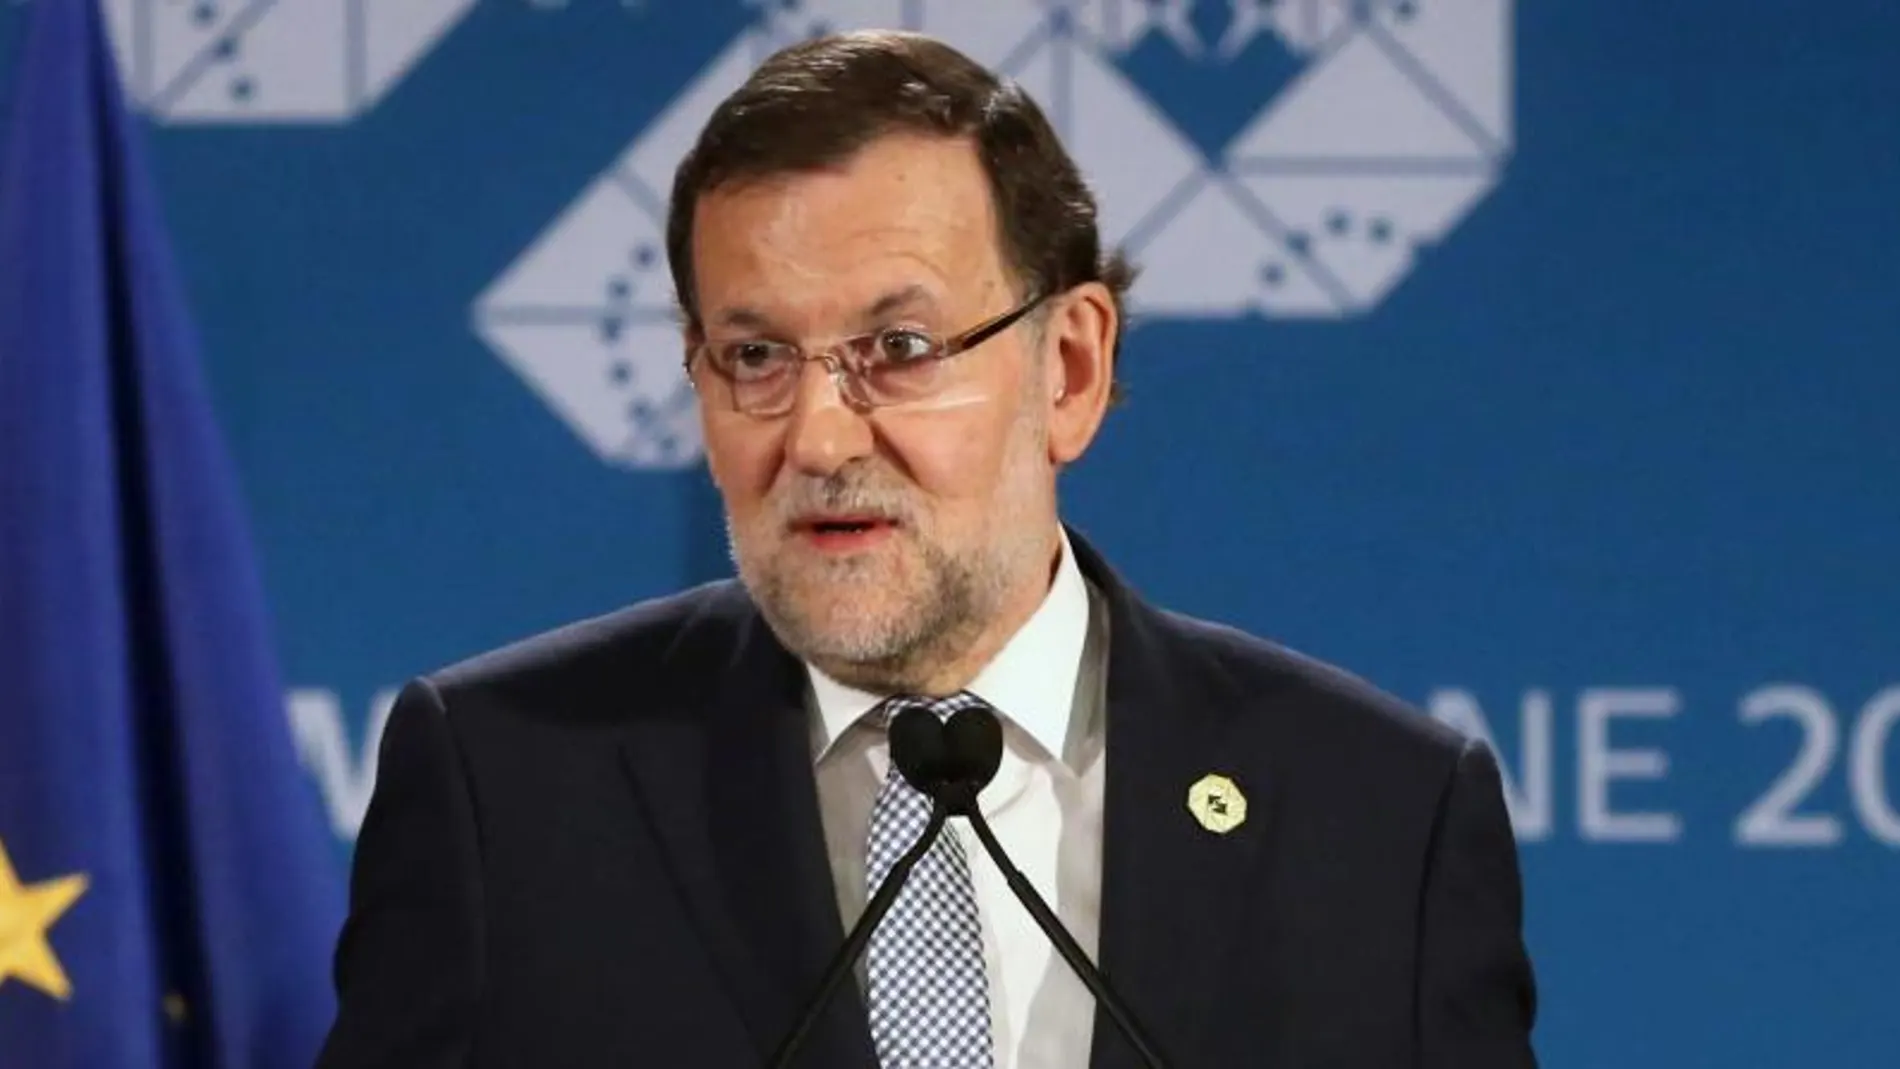 El presidente del Gobierno español, Mariano Rajoy, durante la rueda de prensa en la que anunció su viaje a Cataluña para explicar su posición ante el 9N